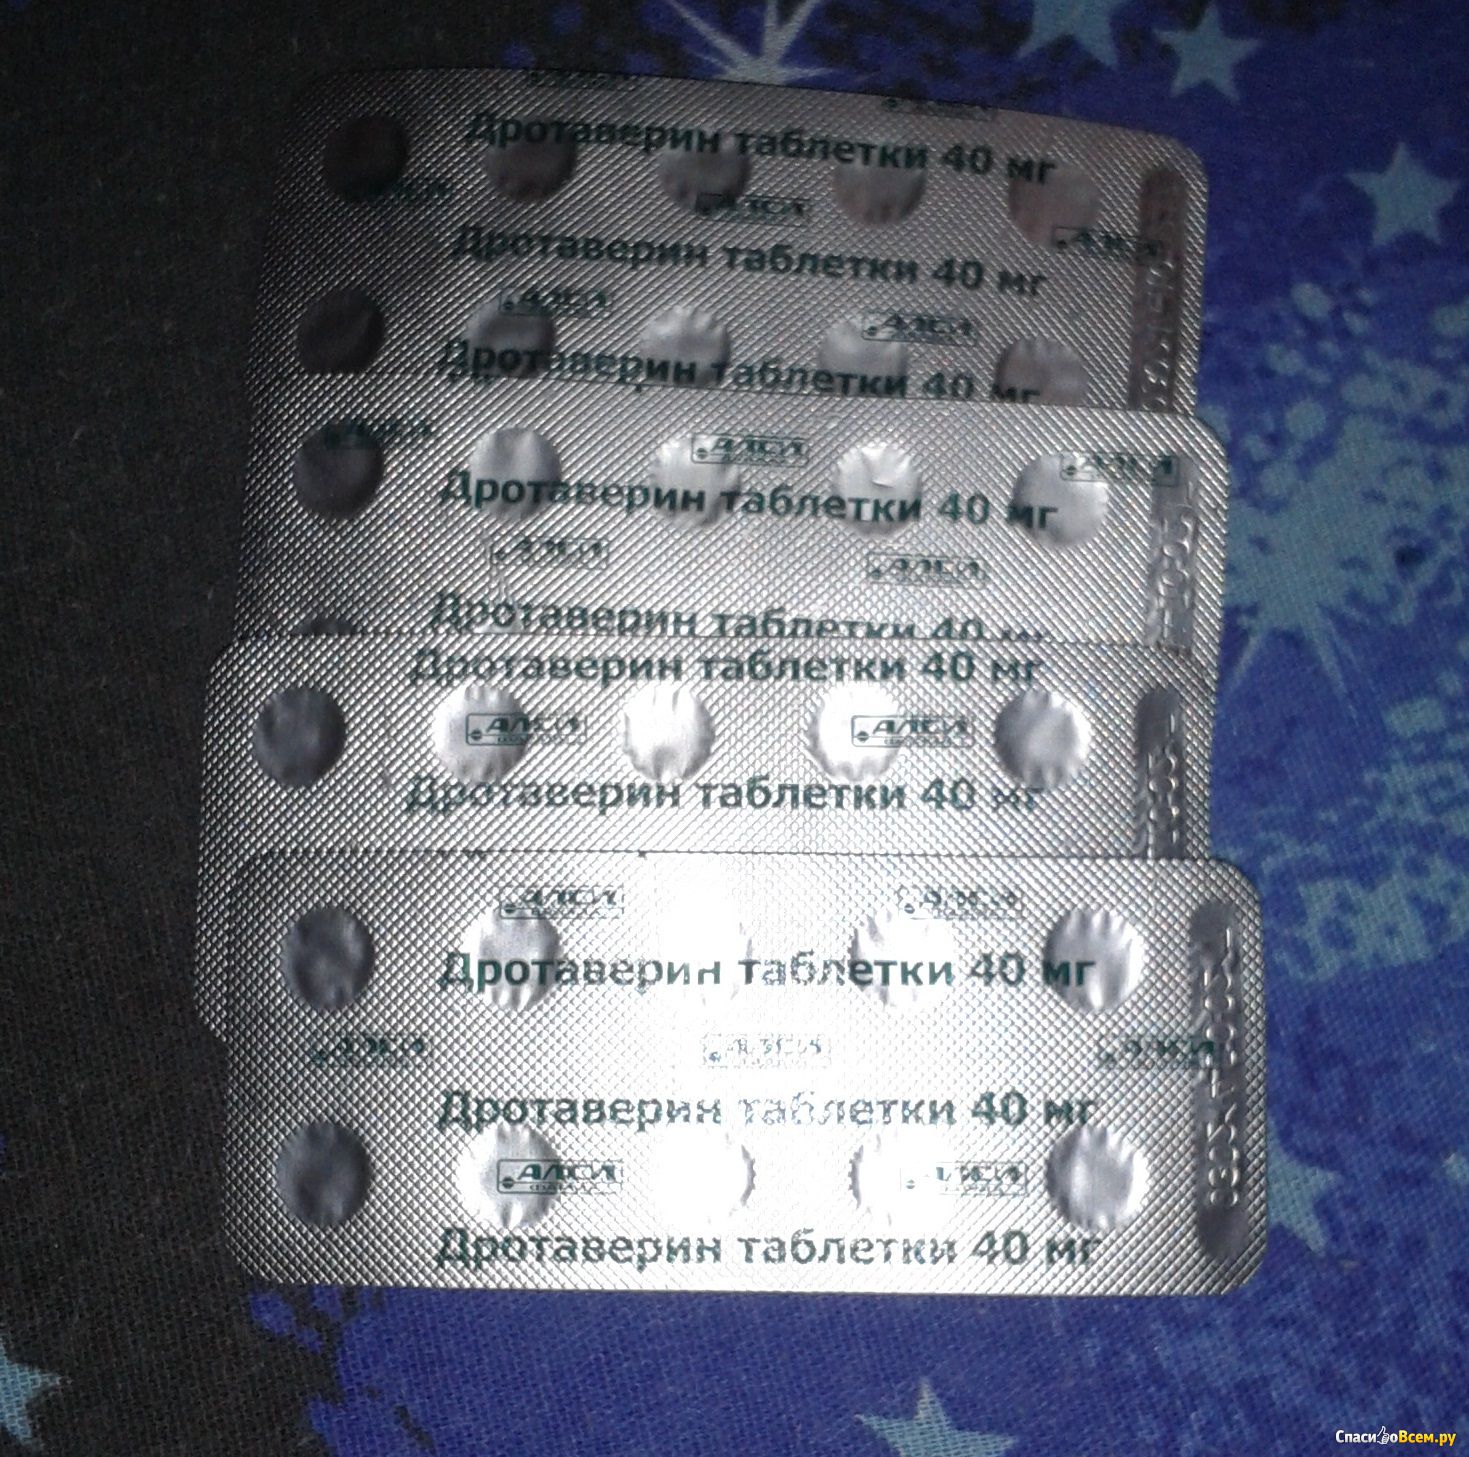 Дротаверин таблетки для чего назначают